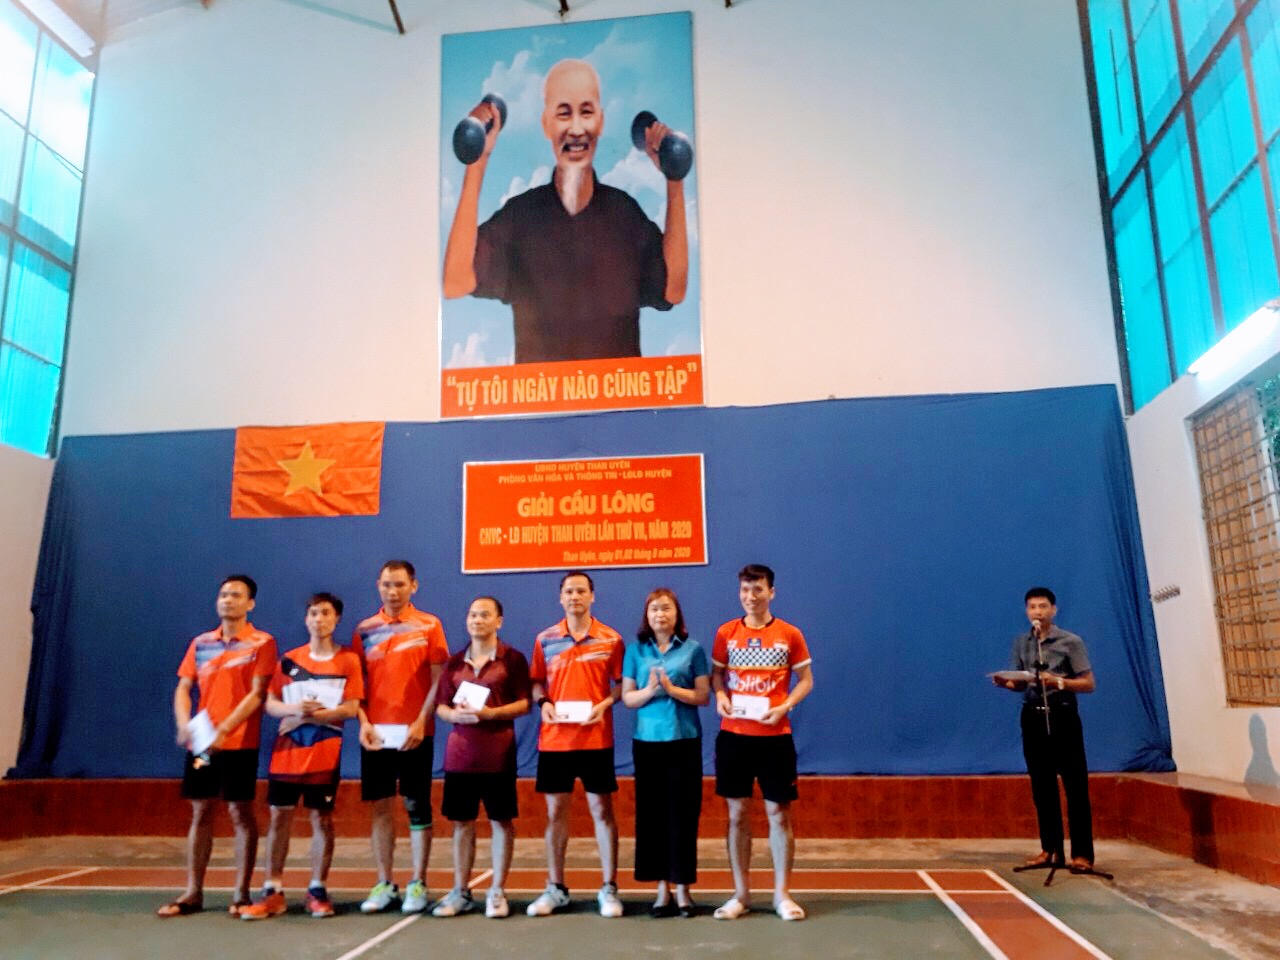 Đồng chí Hoàng Thị Luyến - Chủ tịch Liên đoàn Lao động huyện  trao giải thưởng cho các vận động viên đoạt giải